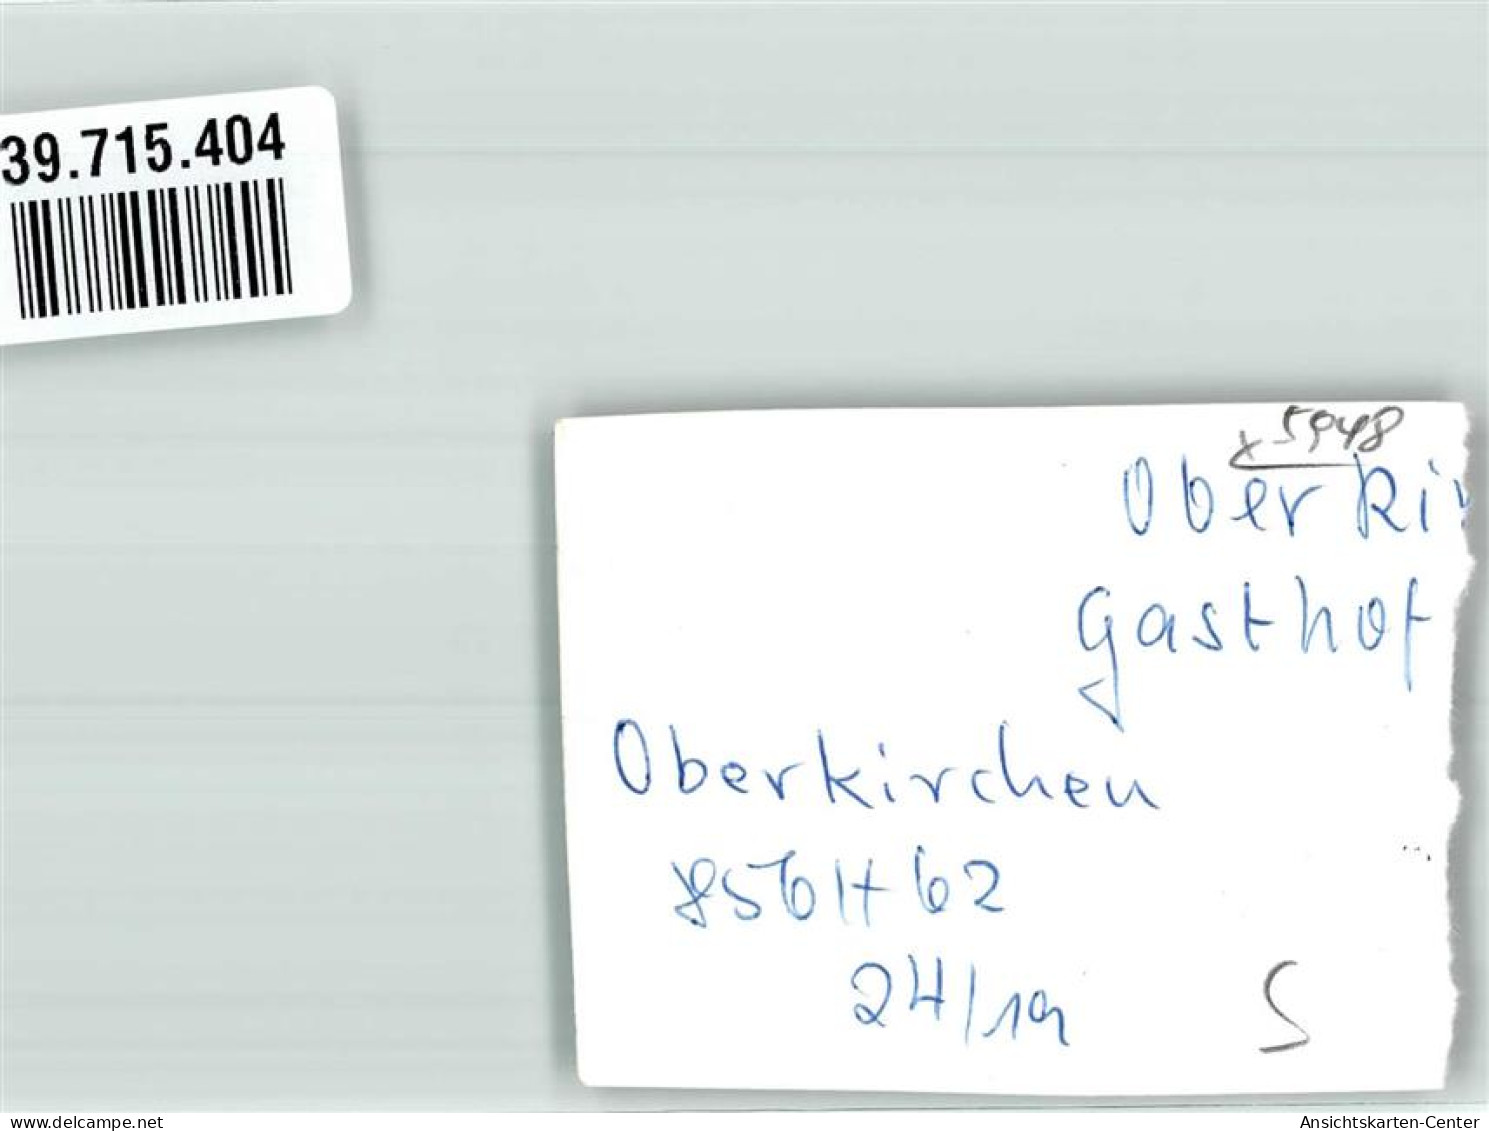 39715404 - Oberkirchen , Sauerl - Schmallenberg